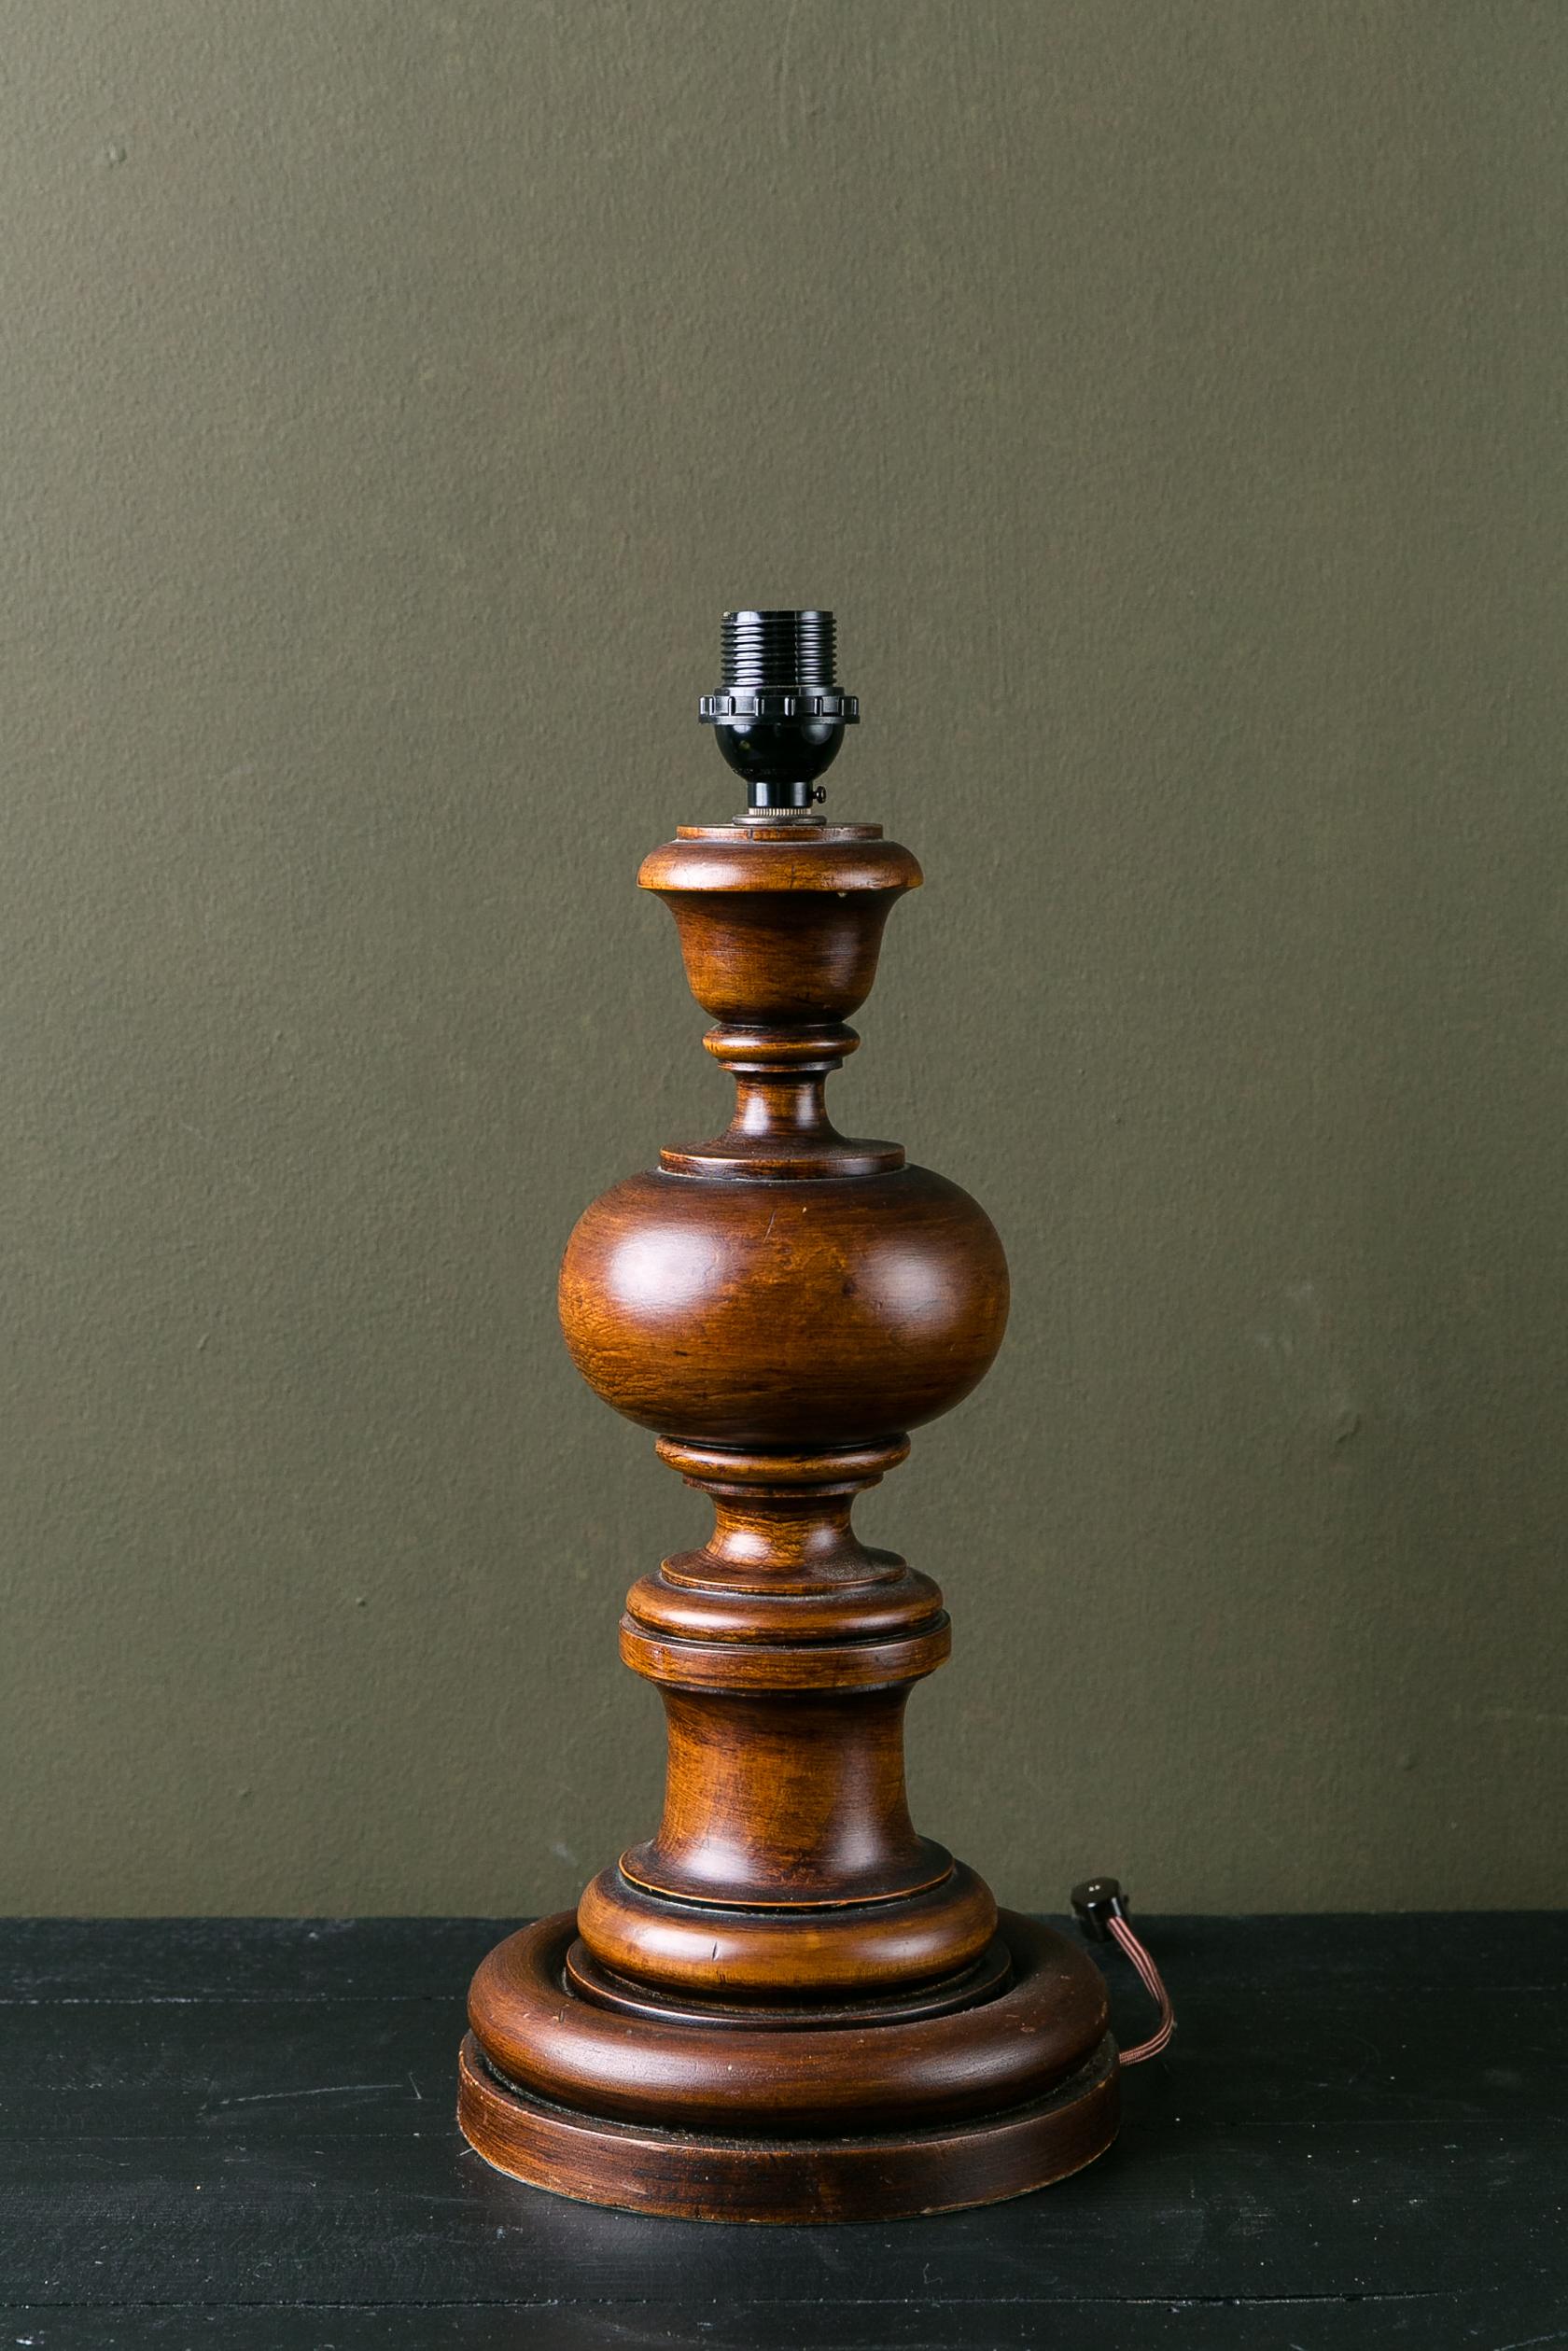 Diese geschnitzte Holzlampe wurde in Italien hergestellt, könnte aber aus vielen verschiedenen Ländern stammen. Es wurde in den USA mit einer Phenolbuchse verkabelt. Die Lampe ist ein Klassiker, der sowohl in einem Landhaus als auch in einem